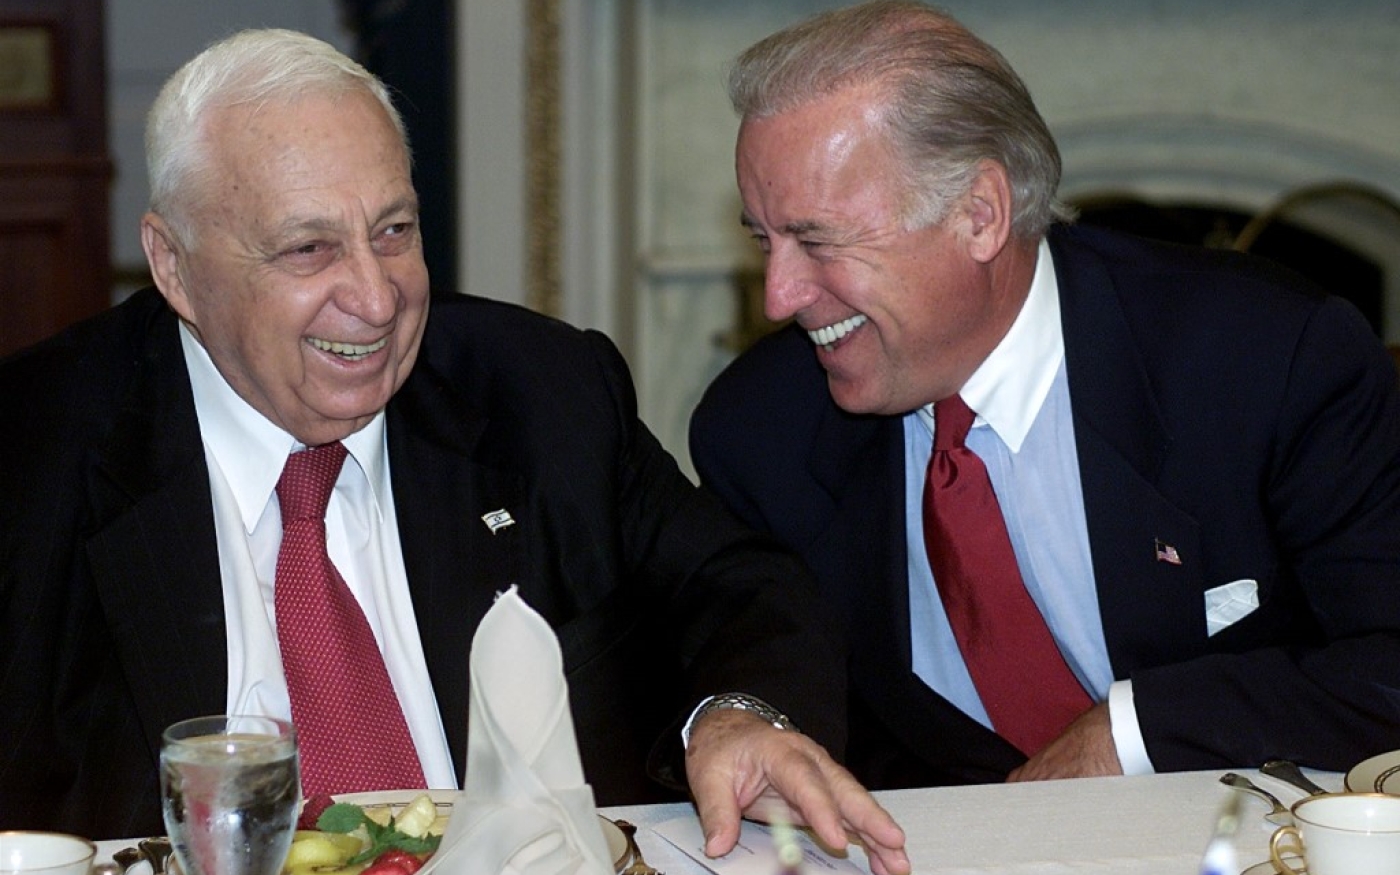 Le Premier ministre Ariel Sharon, en visite aux États-Unis pour remercier les deux chambres du Congrès pour leur soutien à Israël, plaisante avec Joe Biden, alors sénateur, le 11 juin 2002 (AFP)